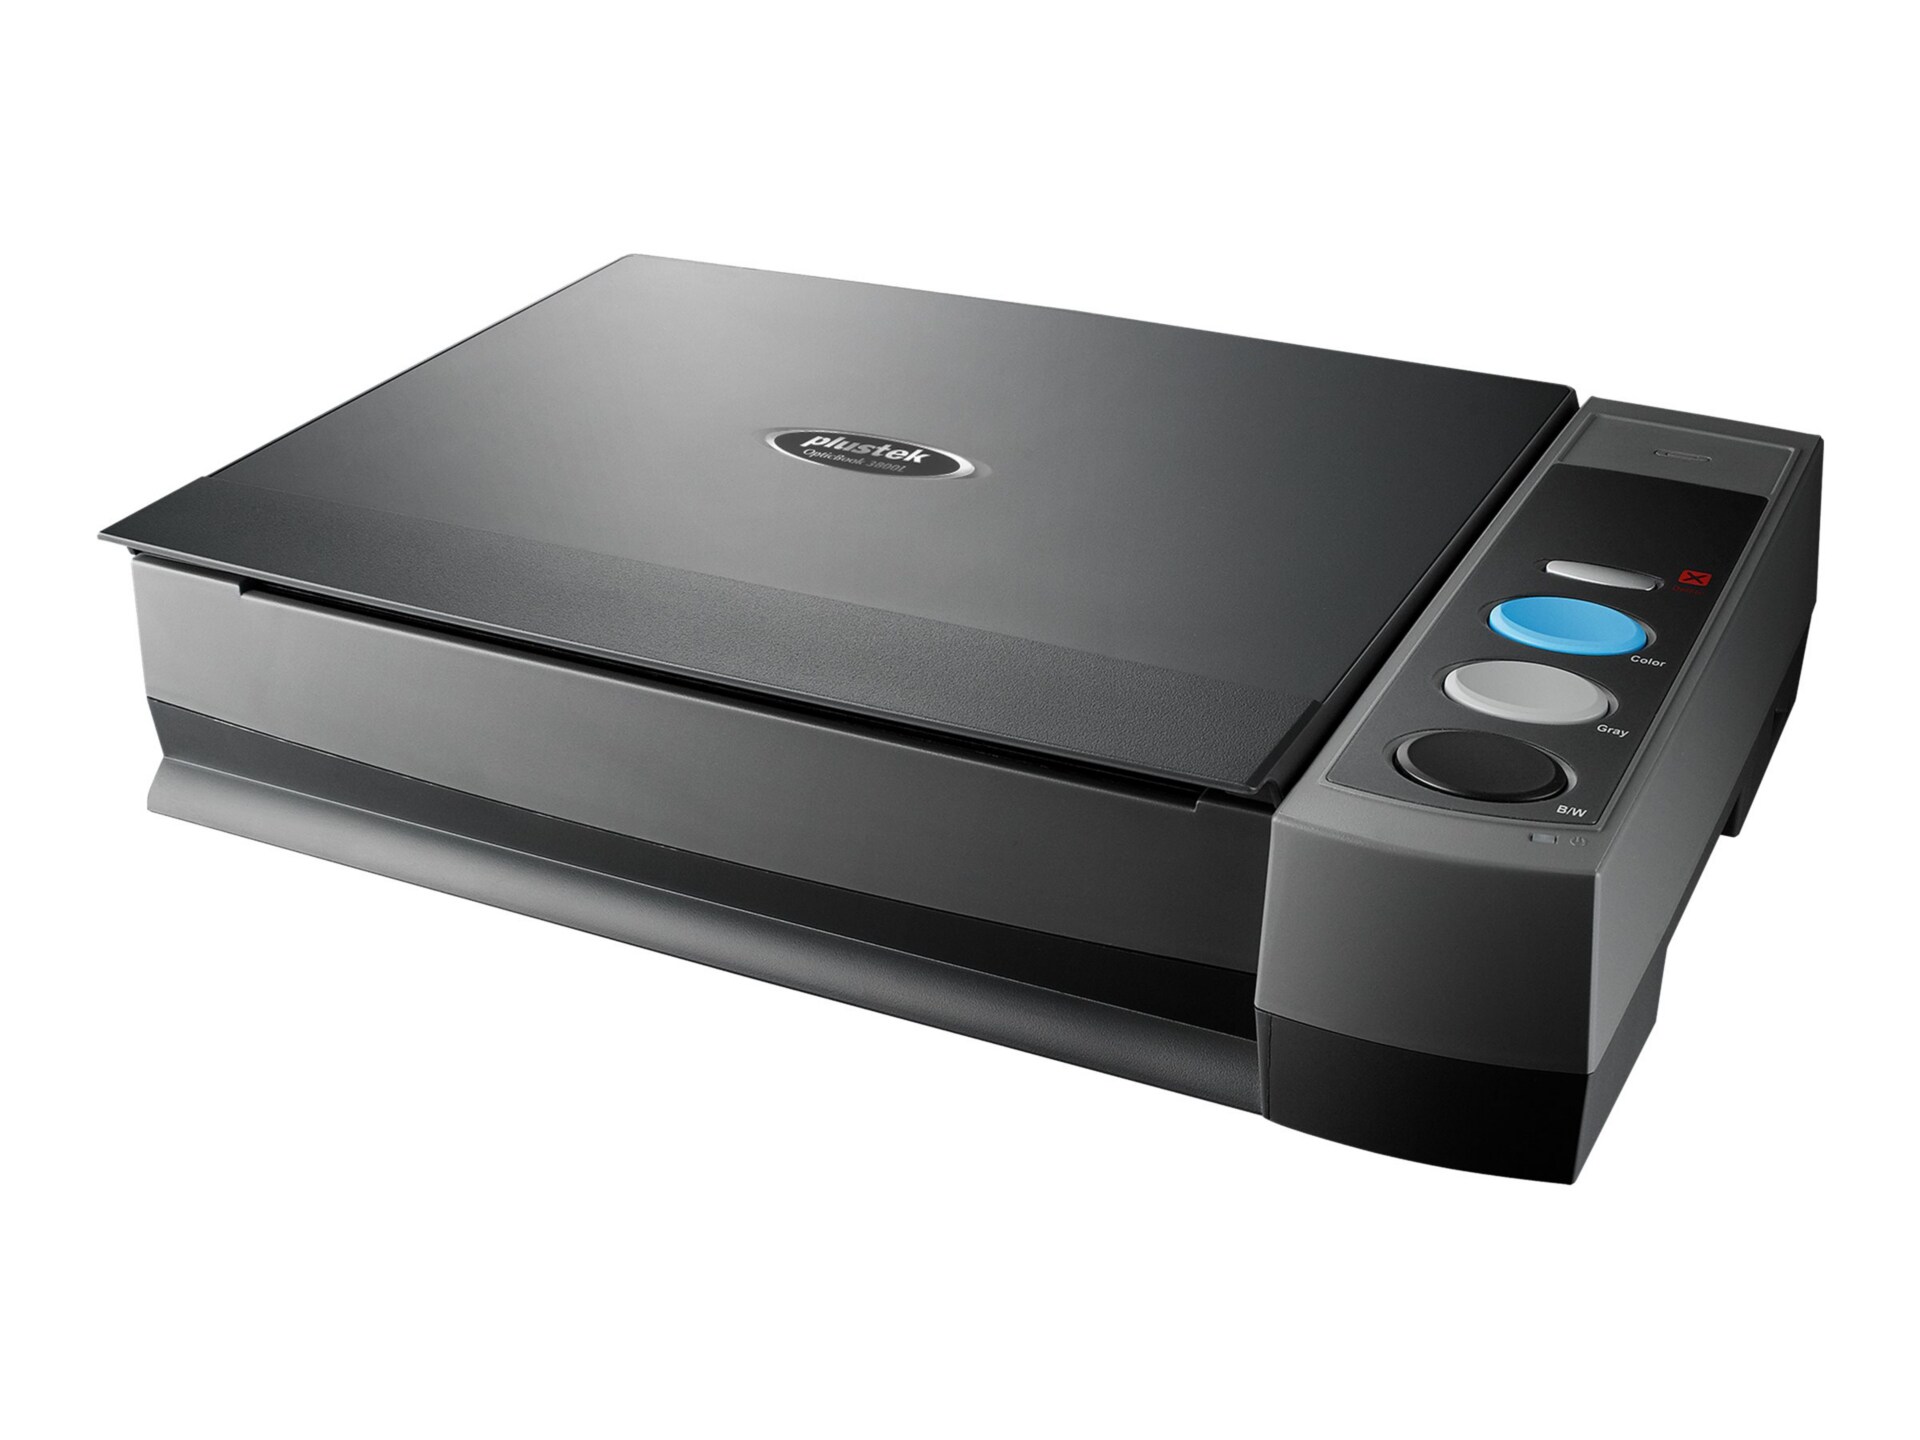 Plustek OpticBook 3800L - flatbed scanner - desktop - USB 2.0